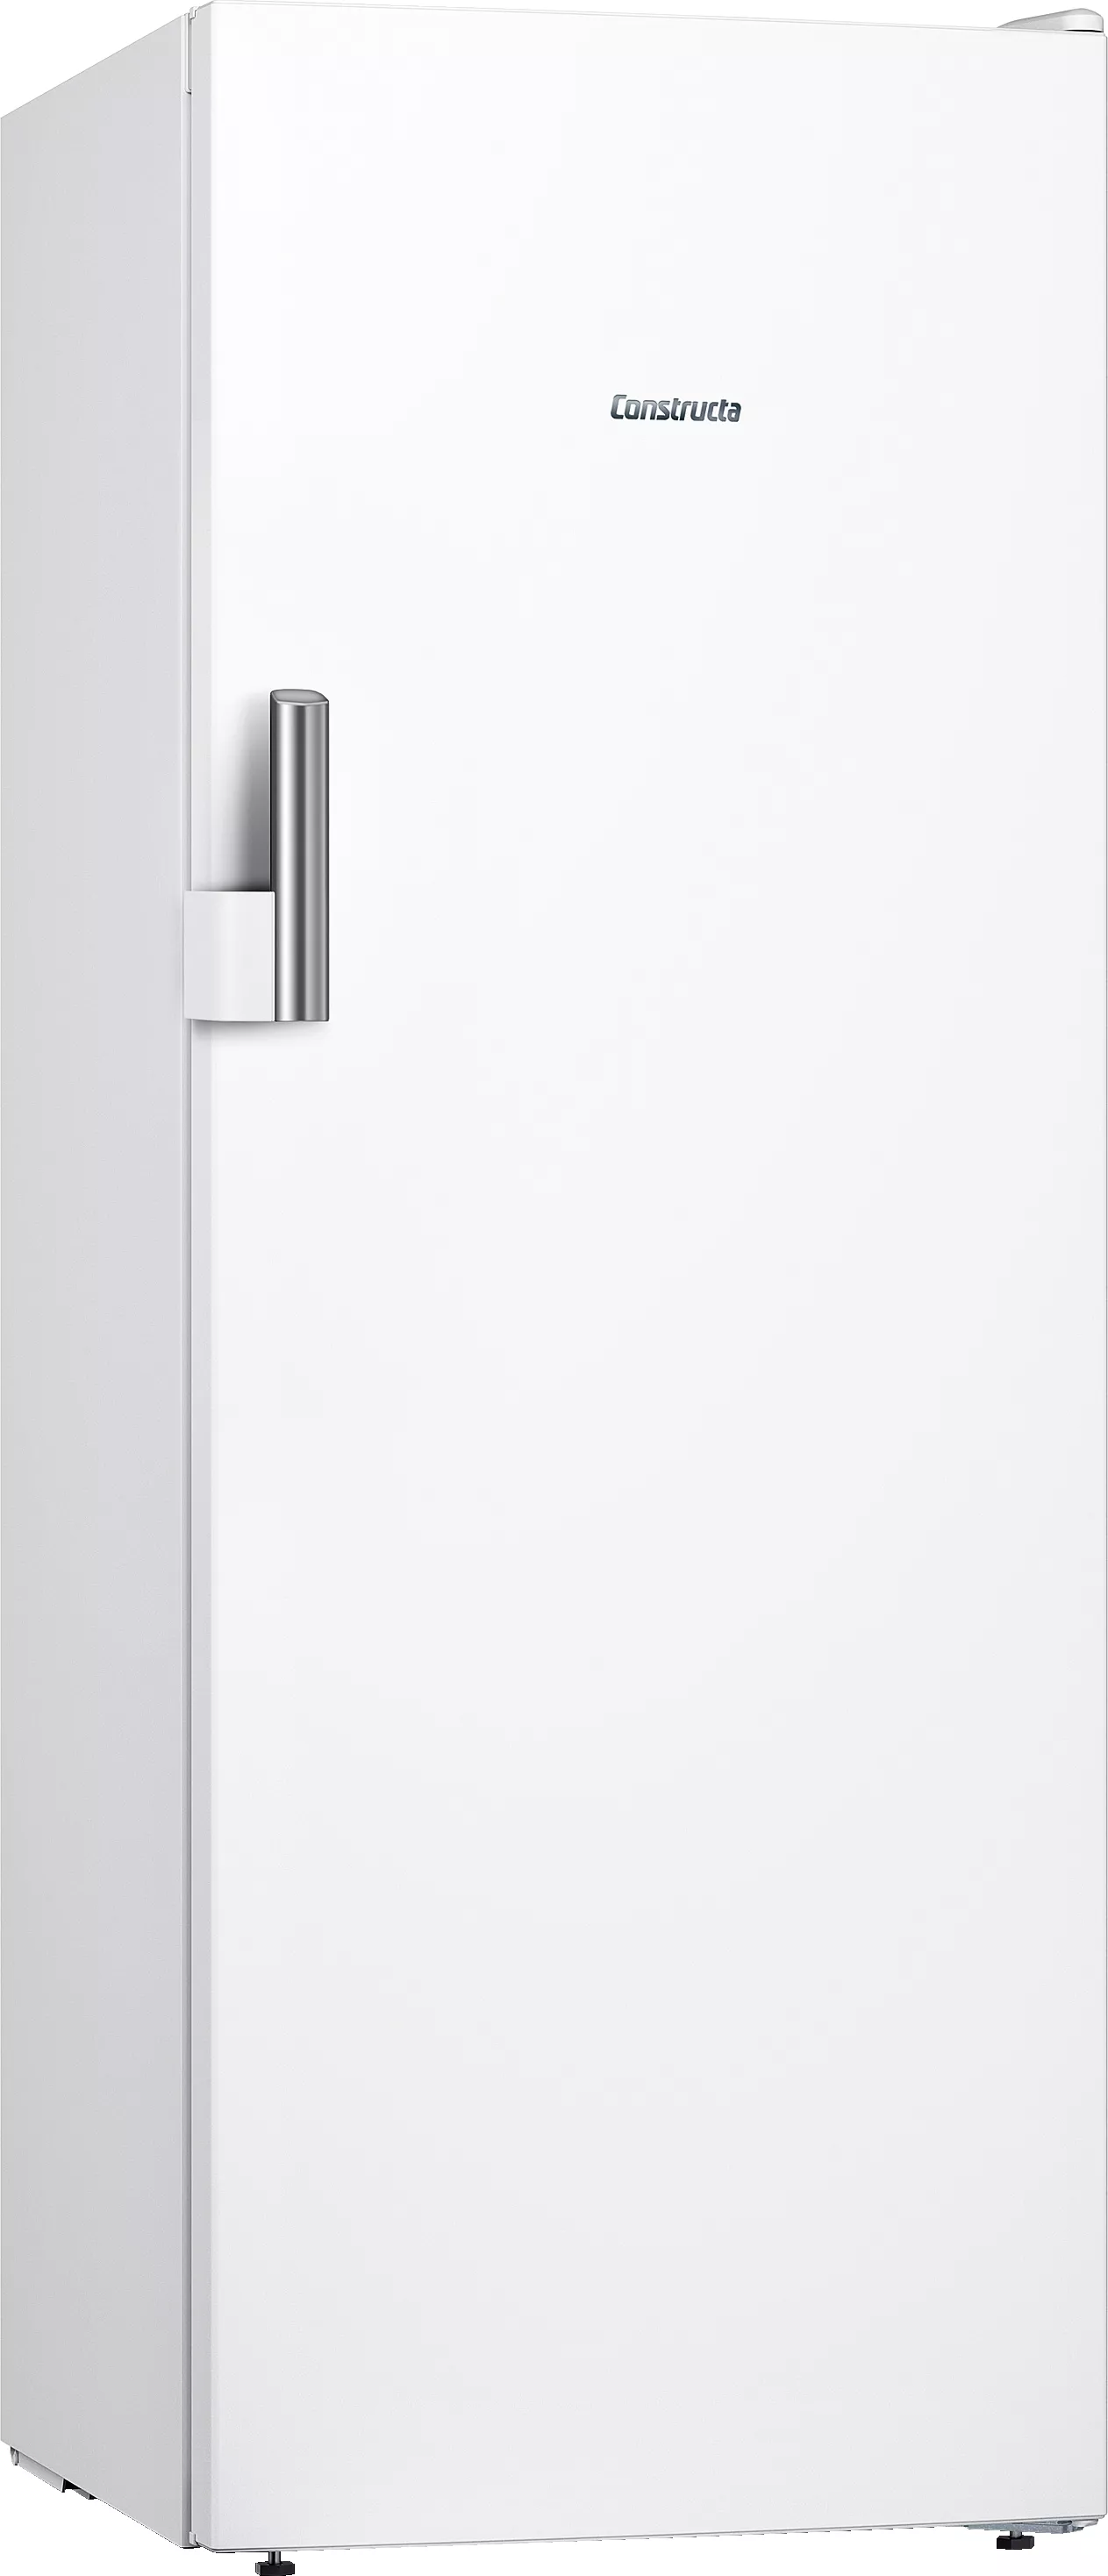 Constructa Freistehender Tiefkühlschrank, 161 x 60 cm, Weiß, CE729EWE0